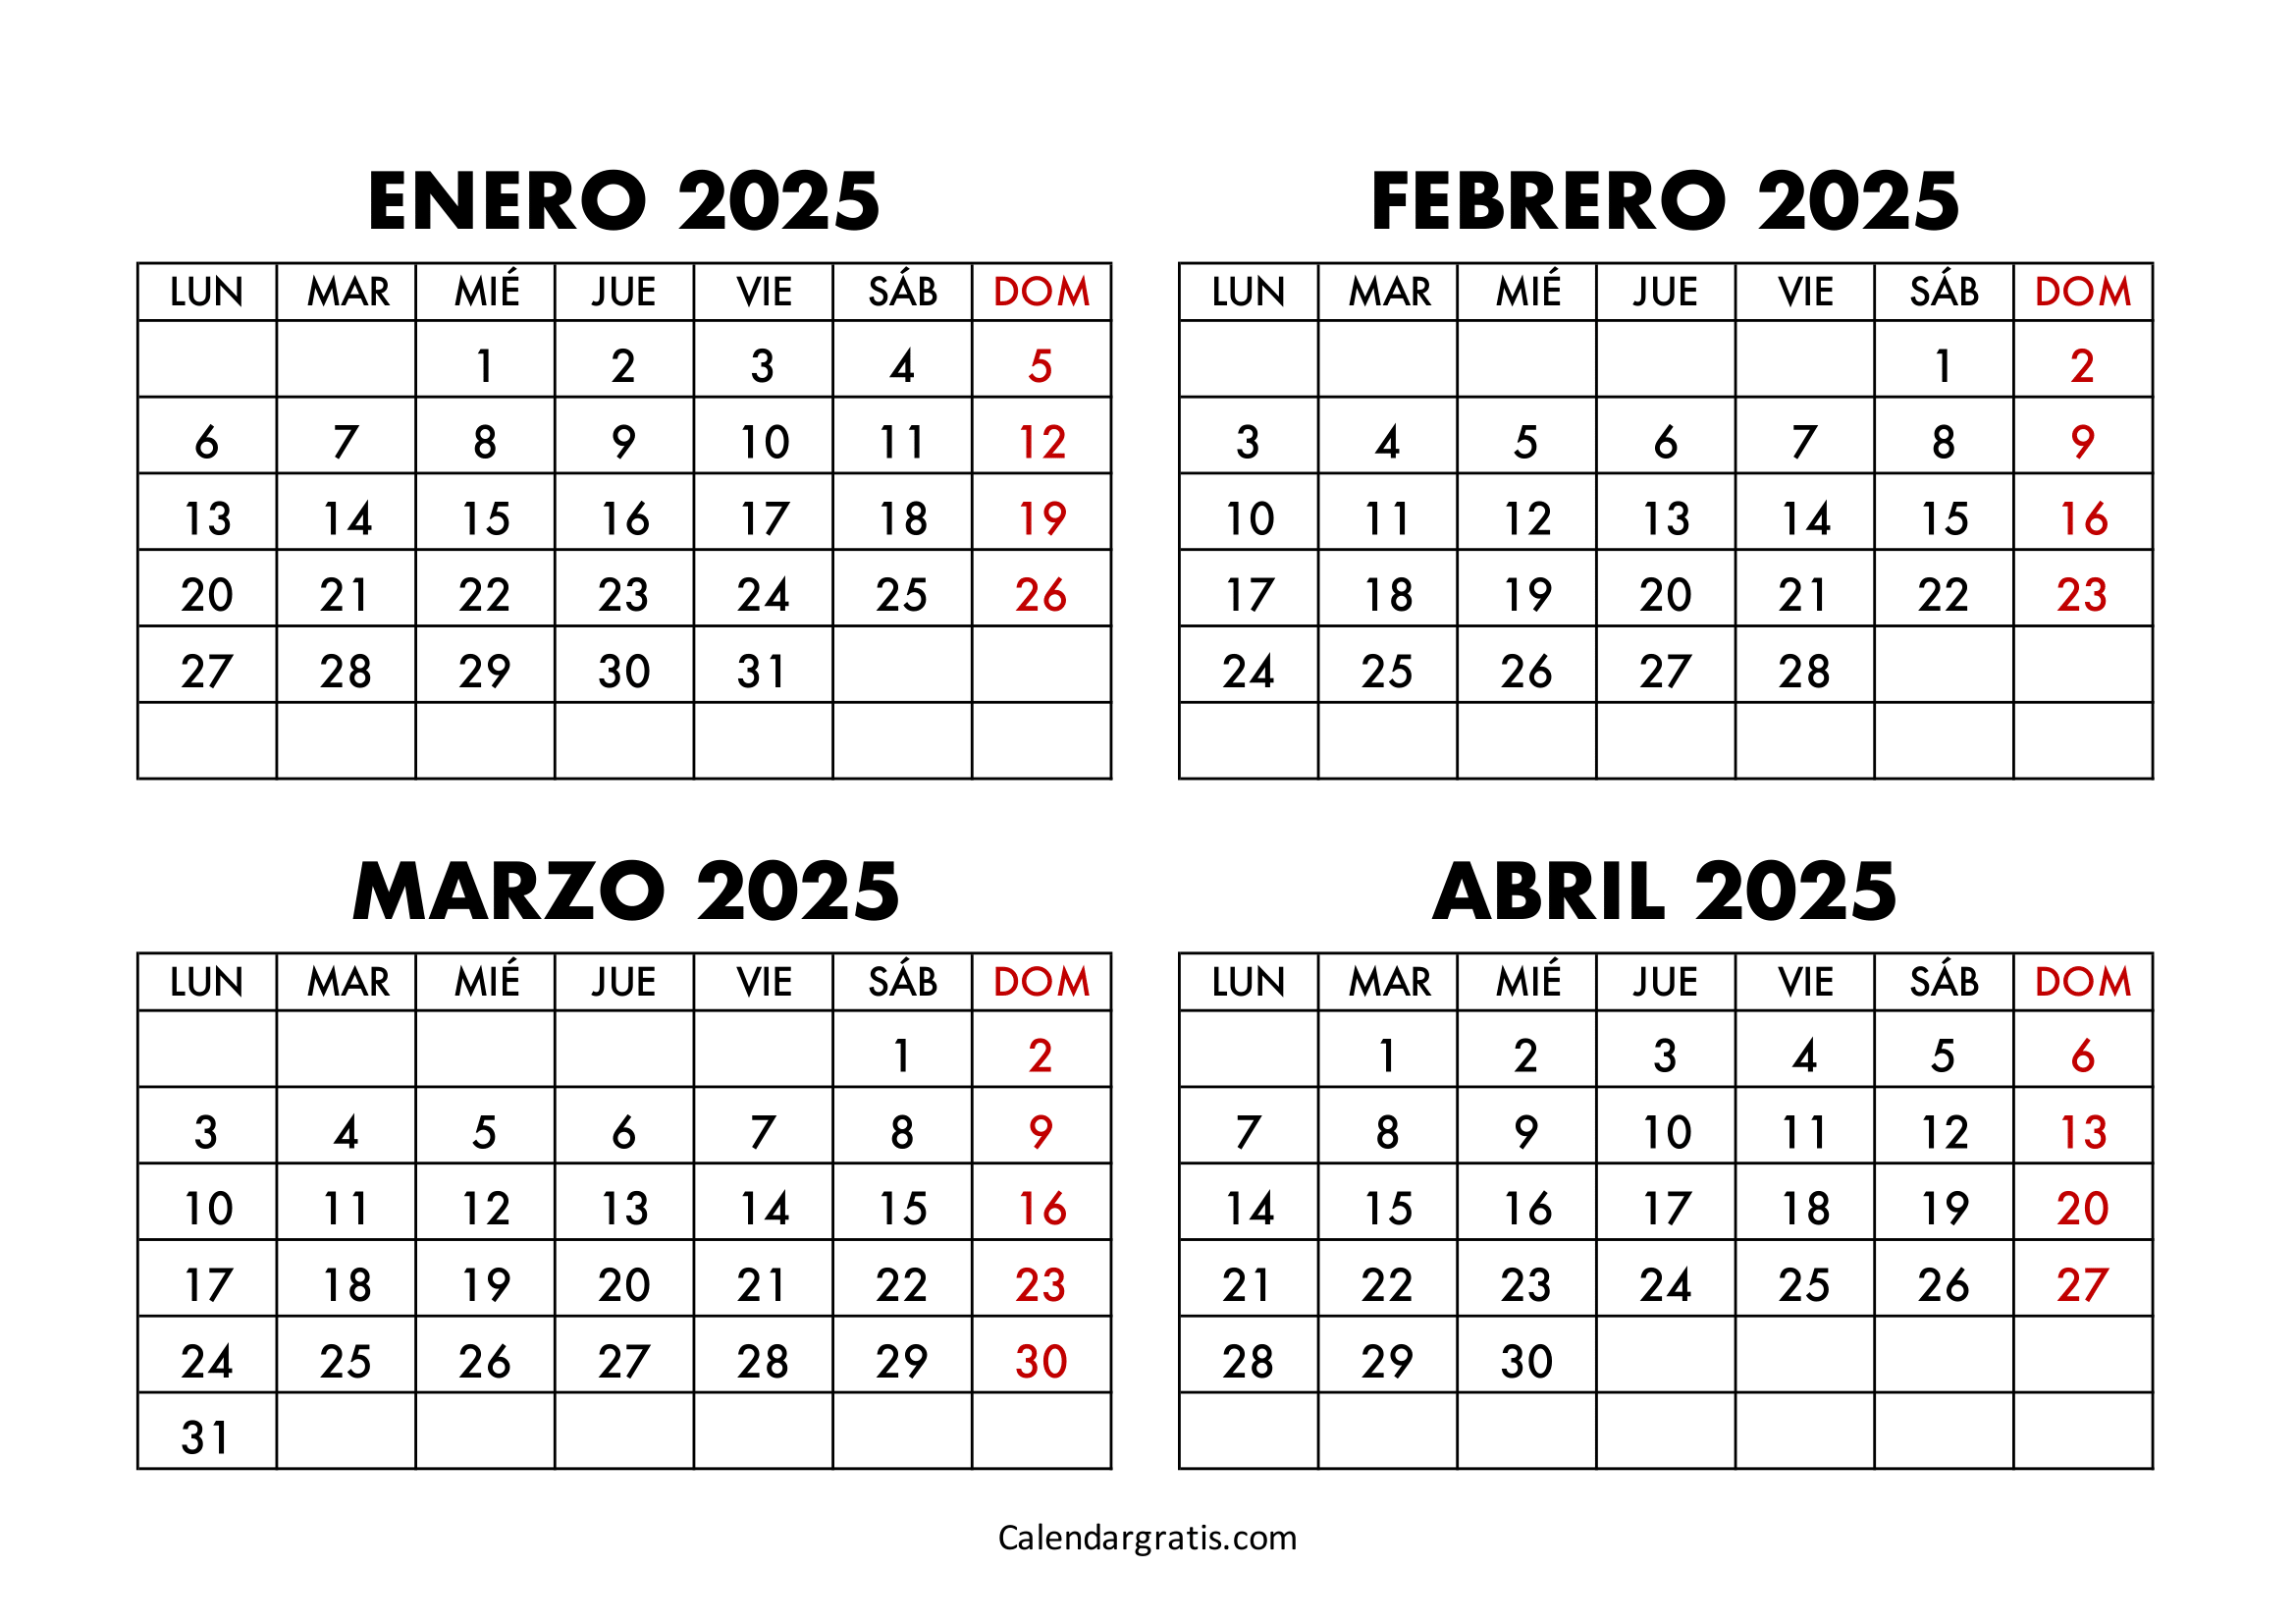 Calendario enero febrero marzo abril 2025 para imprimir